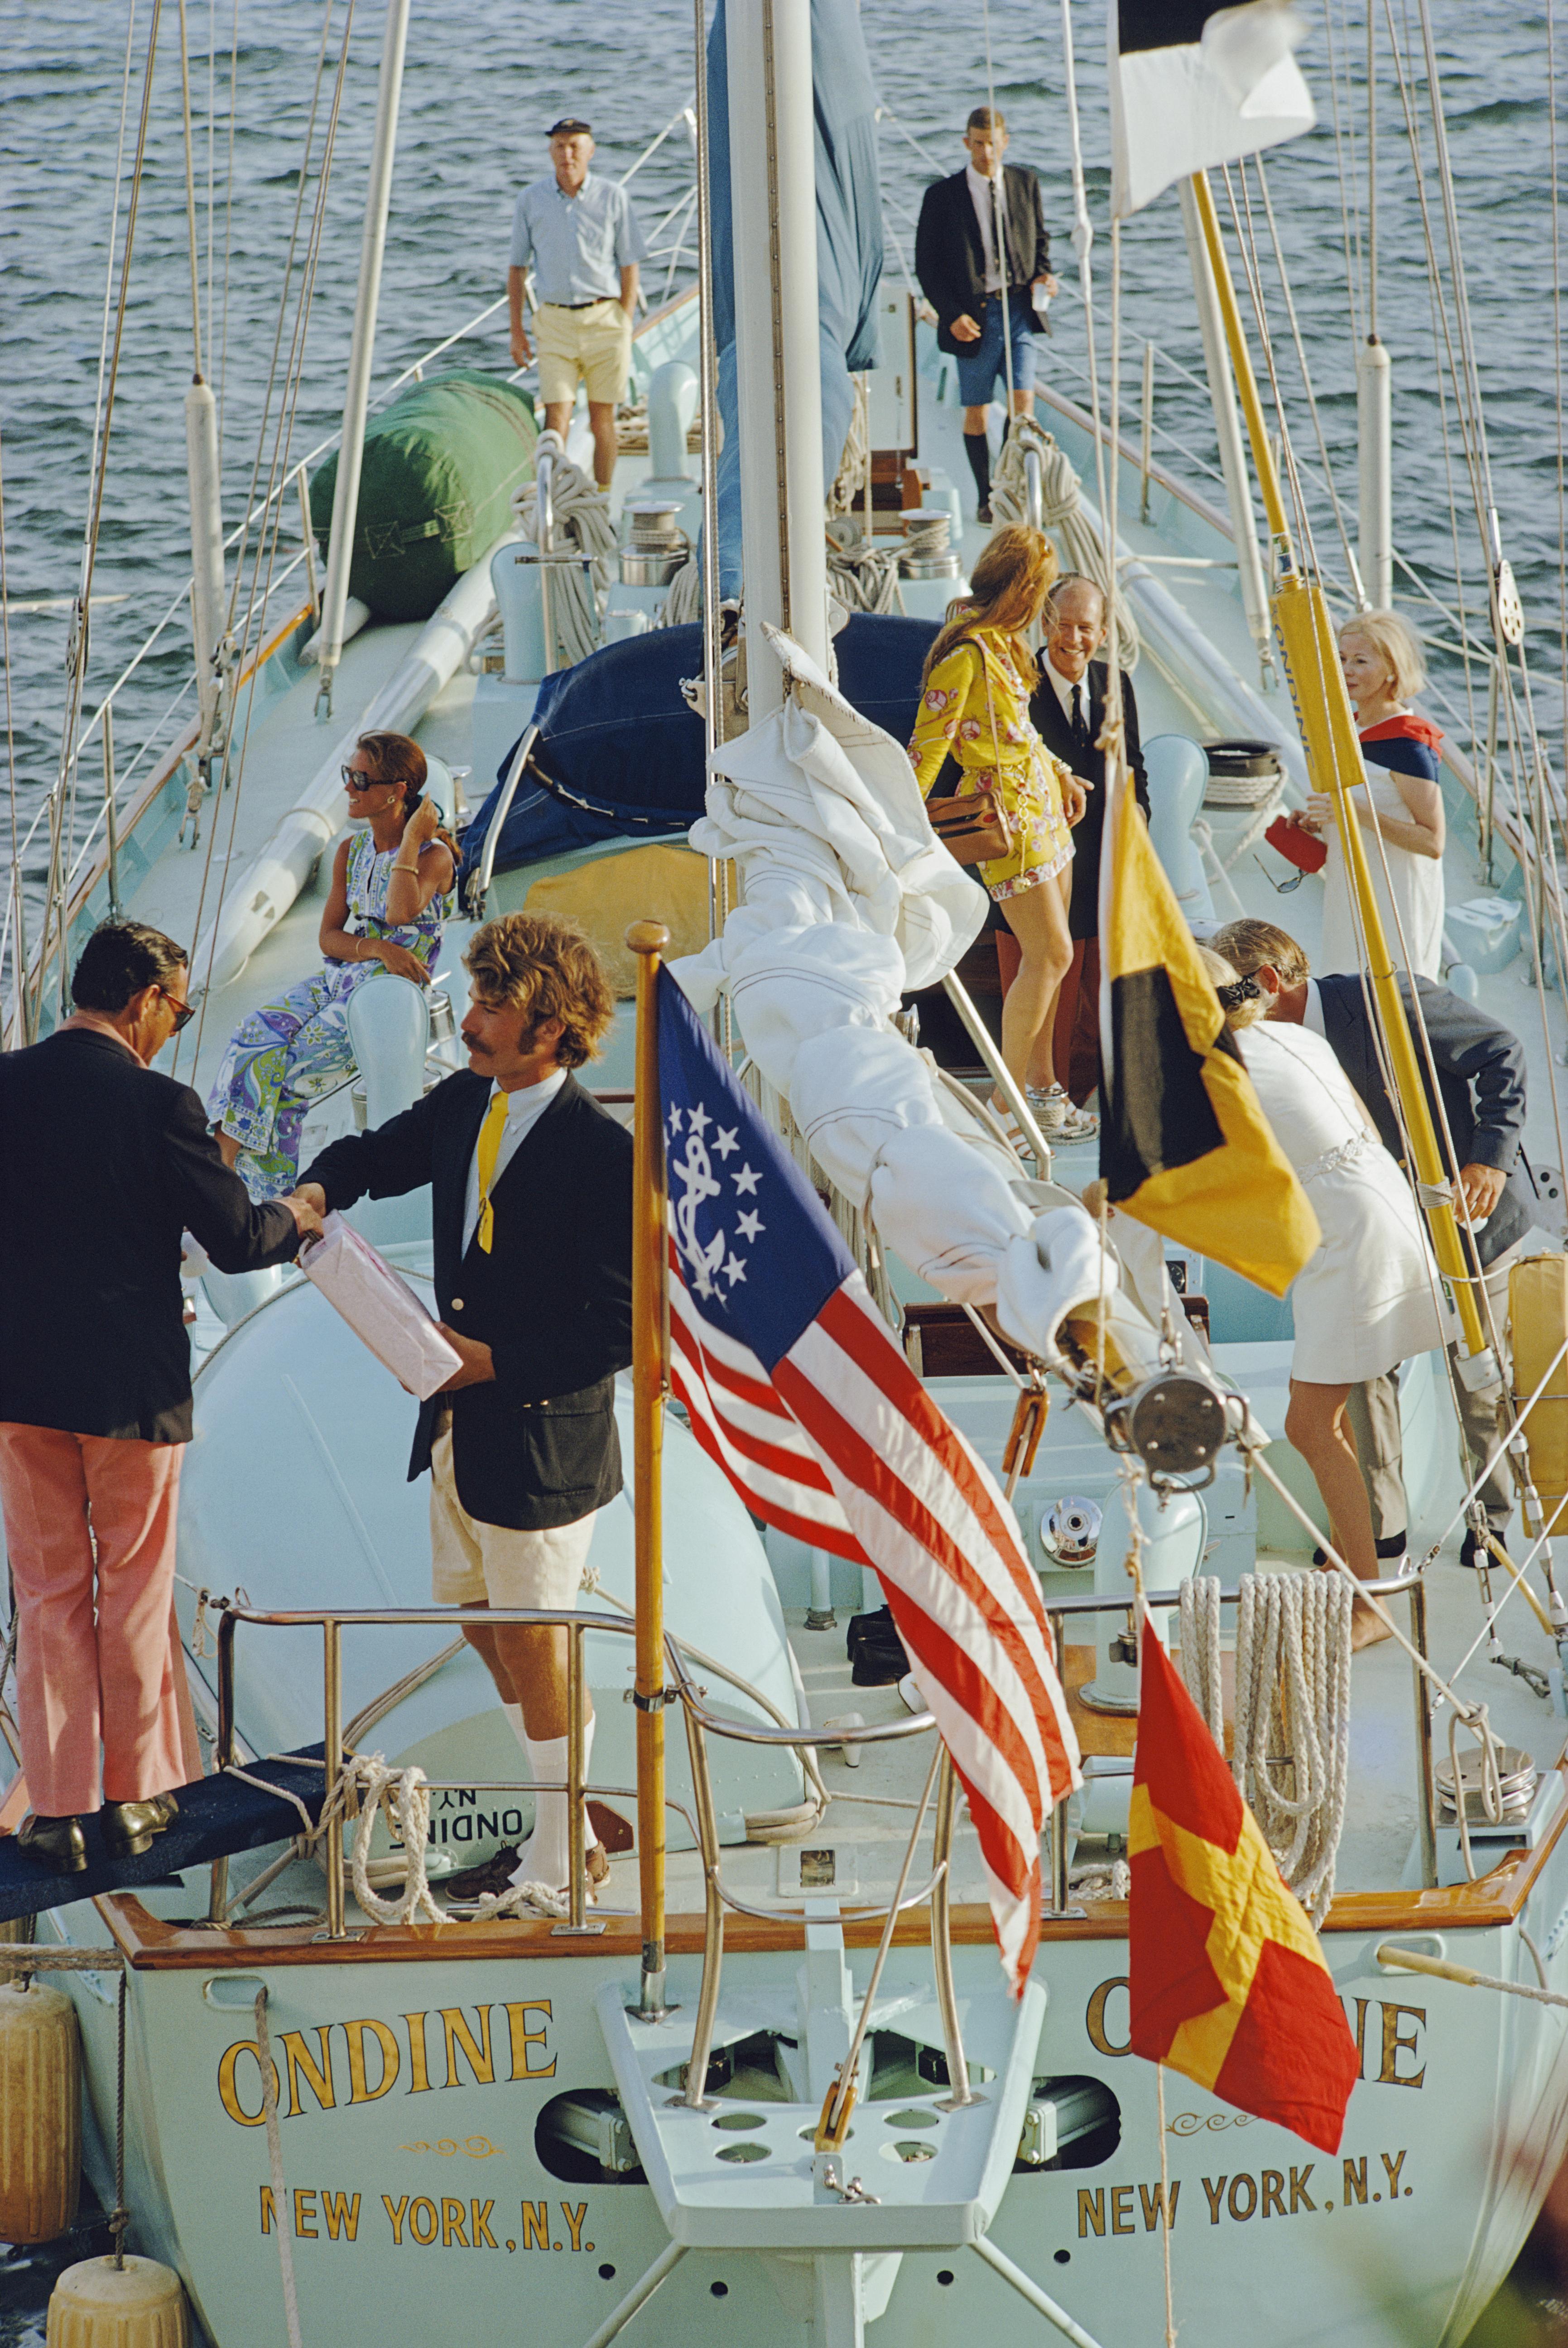 Schlanke Aarons
Party auf den Bermudas
1970 (später gedruckt)
C Druck

Eine Party auf dem Deck der Yacht "Ondine" auf den Bermudas, Juni 1970.

Nachlassgestempelte und handnummerierte Auflage von 150 Stück mit Echtheitszertifikat des Nachlasses.